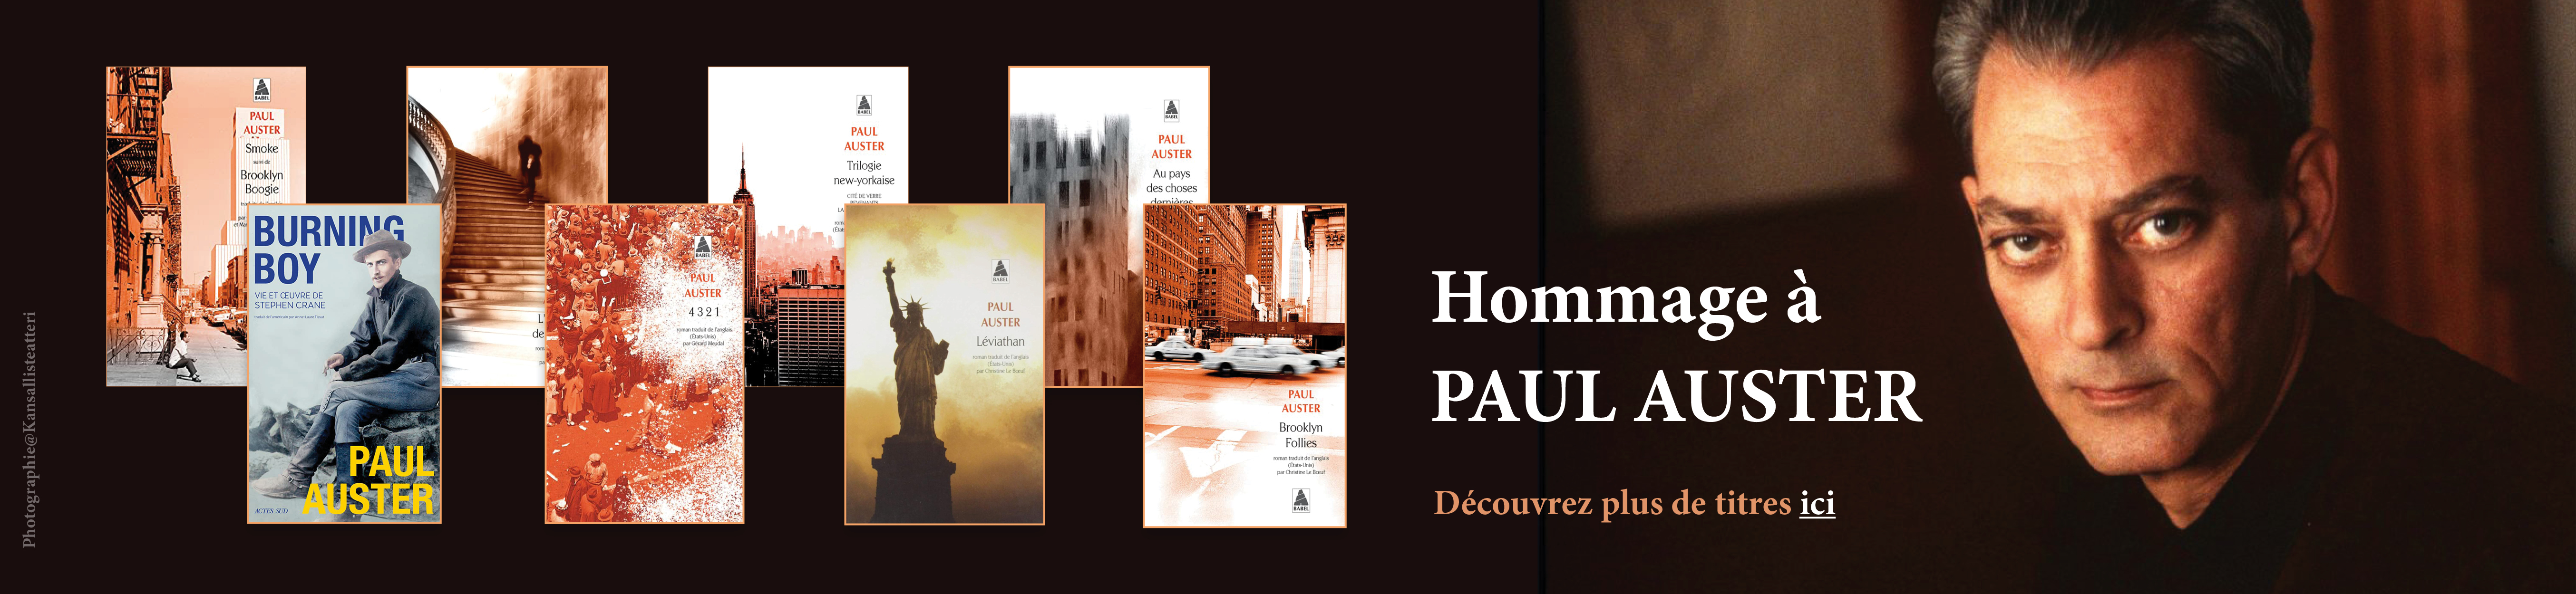 Bann Paul Auster